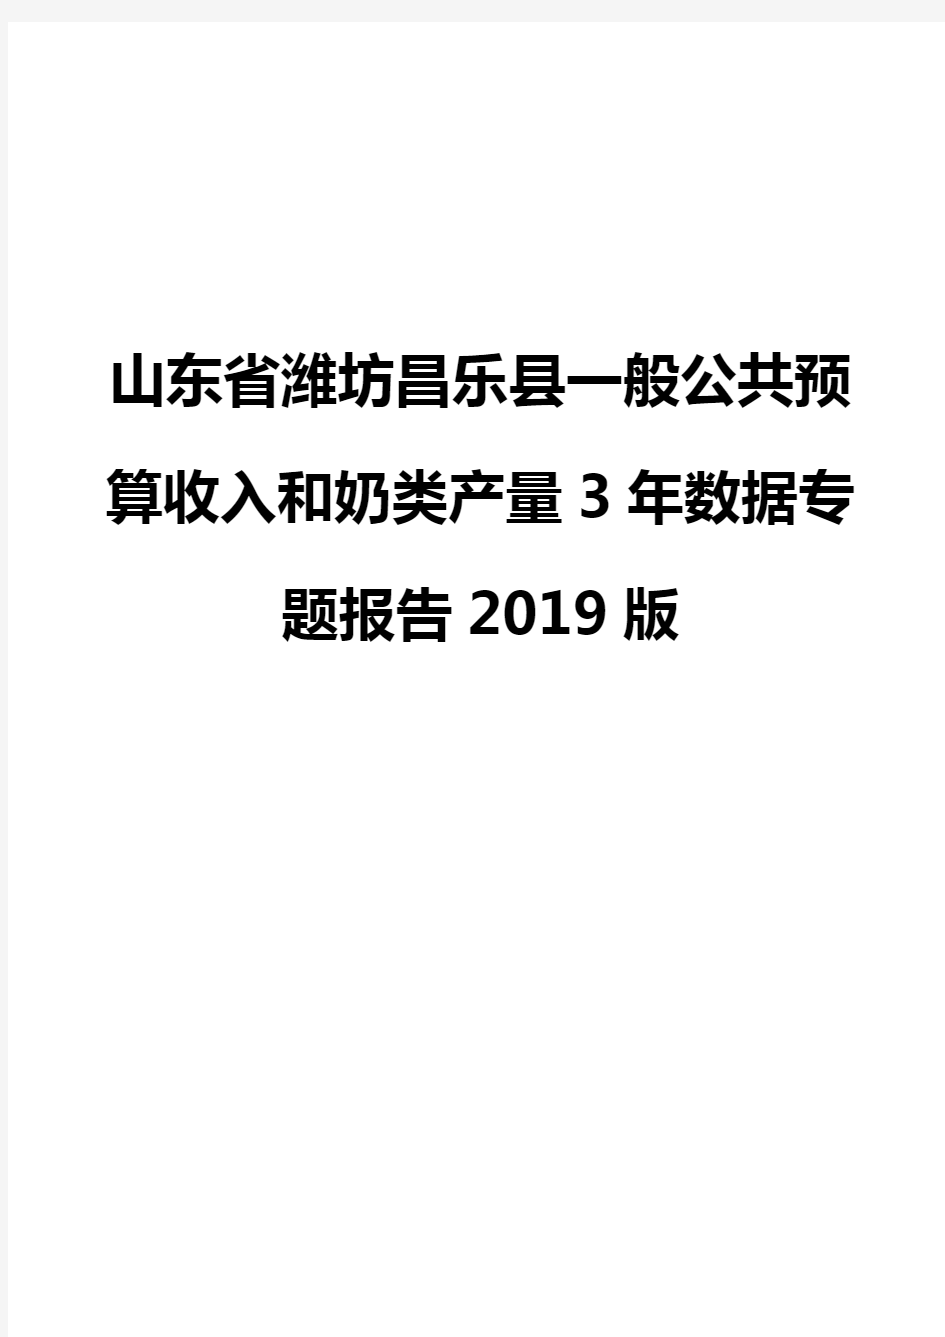 山东省潍坊昌乐县一般公共预算收入和奶类产量3年数据专题报告2019版